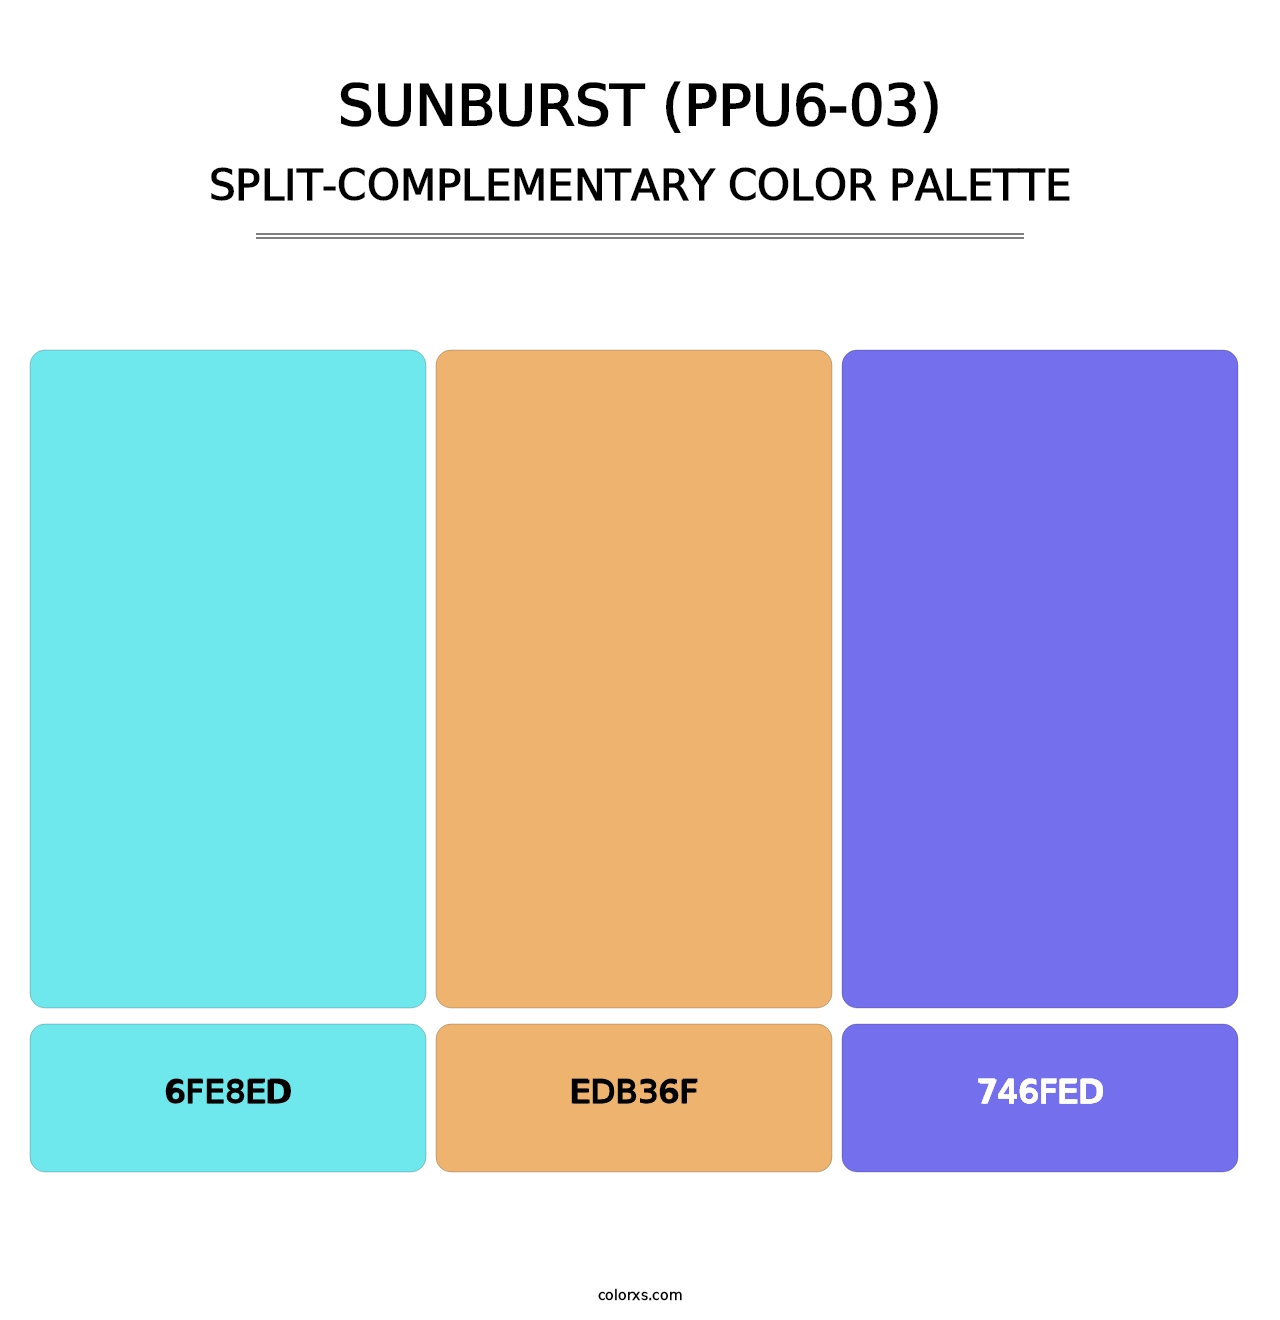 Sunburst (PPU6-03) - Split-Complementary Color Palette